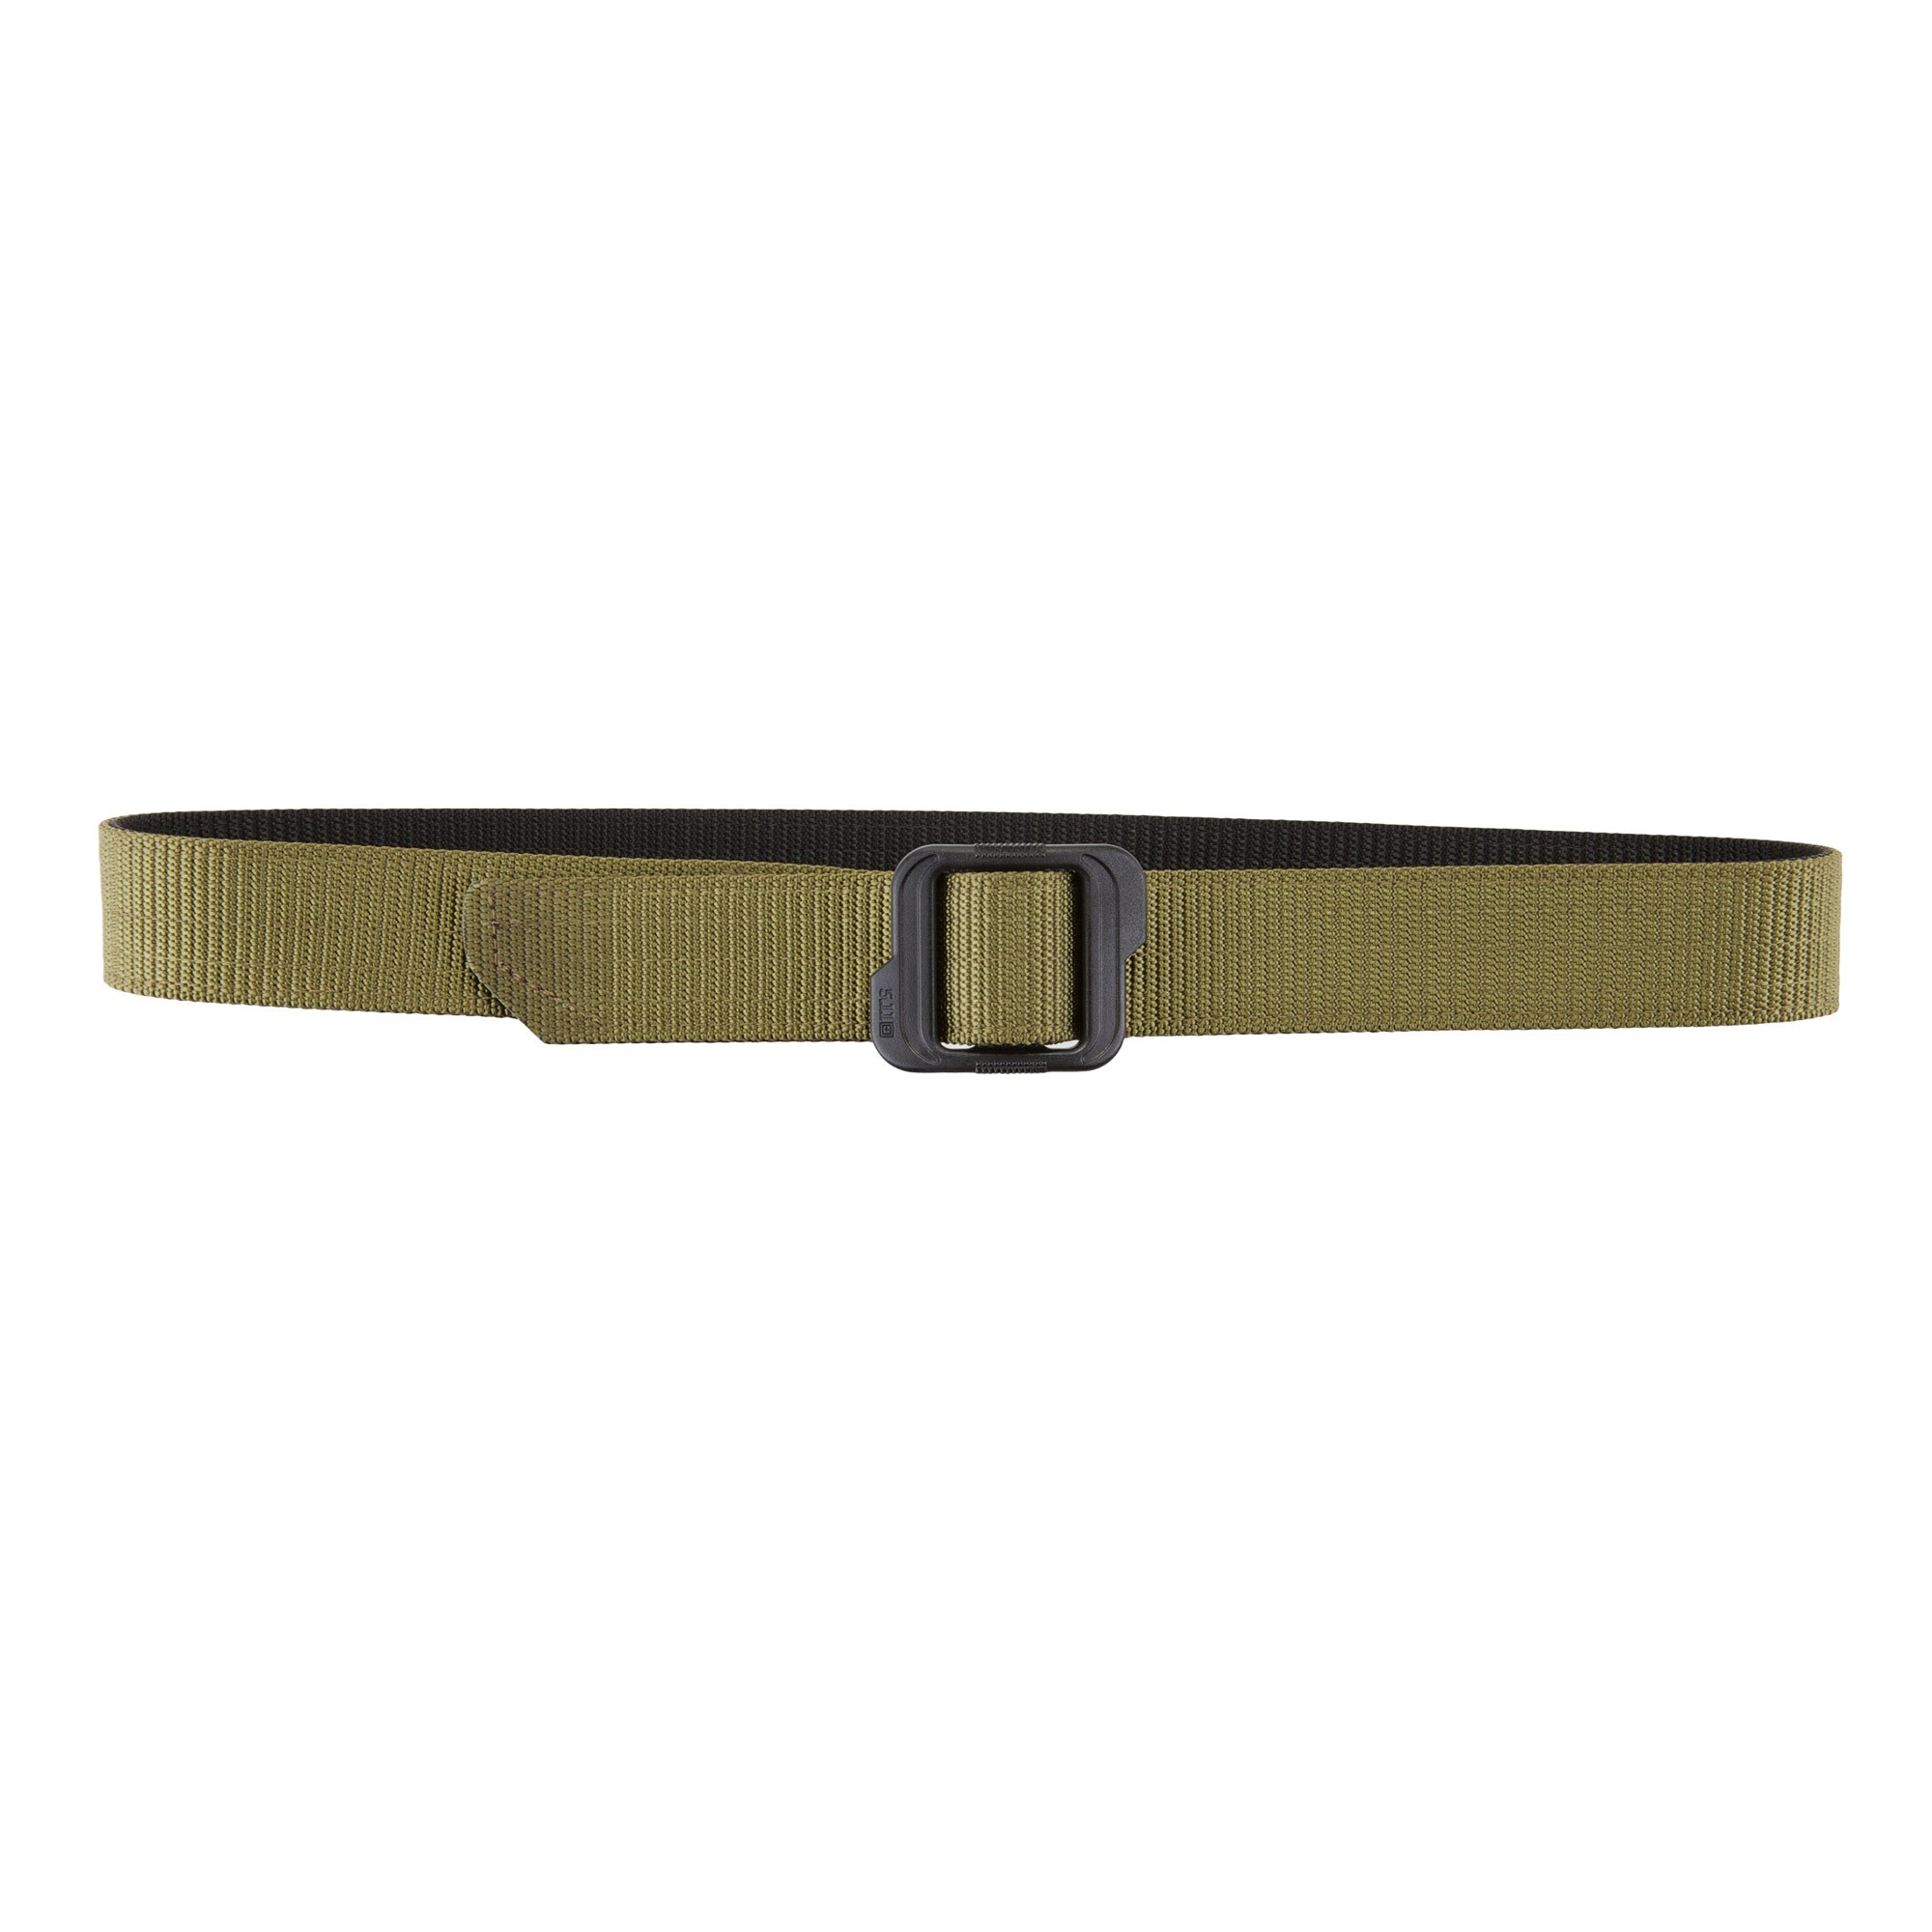 5.11 Double Duty TDU Belt – 1.5″ Wide